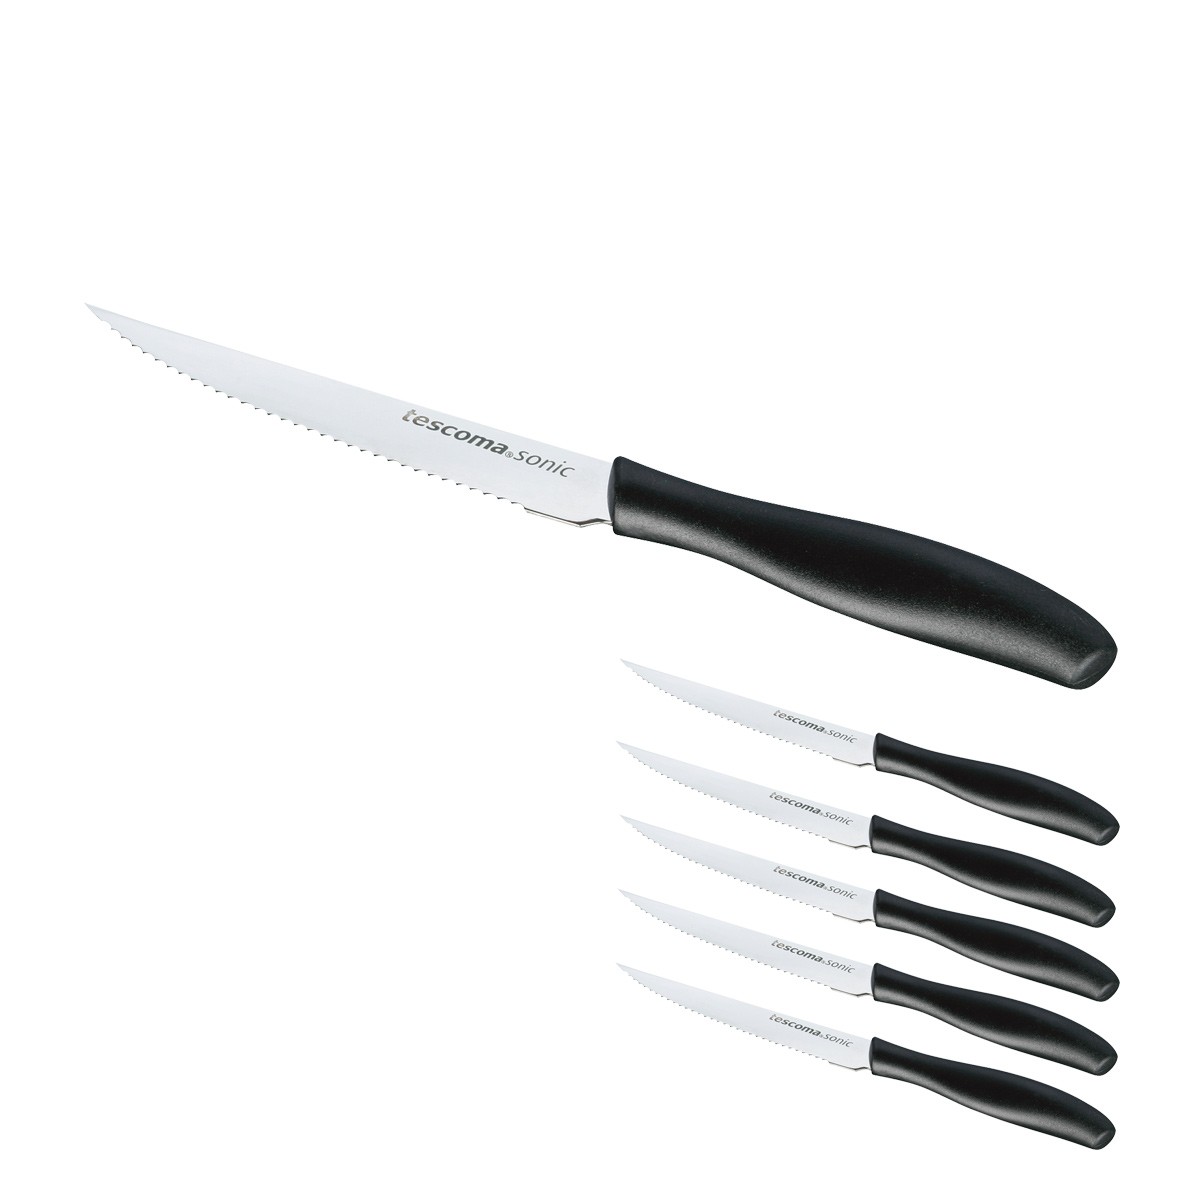 Nôž steakový SONIC 12 cm, 6 ks